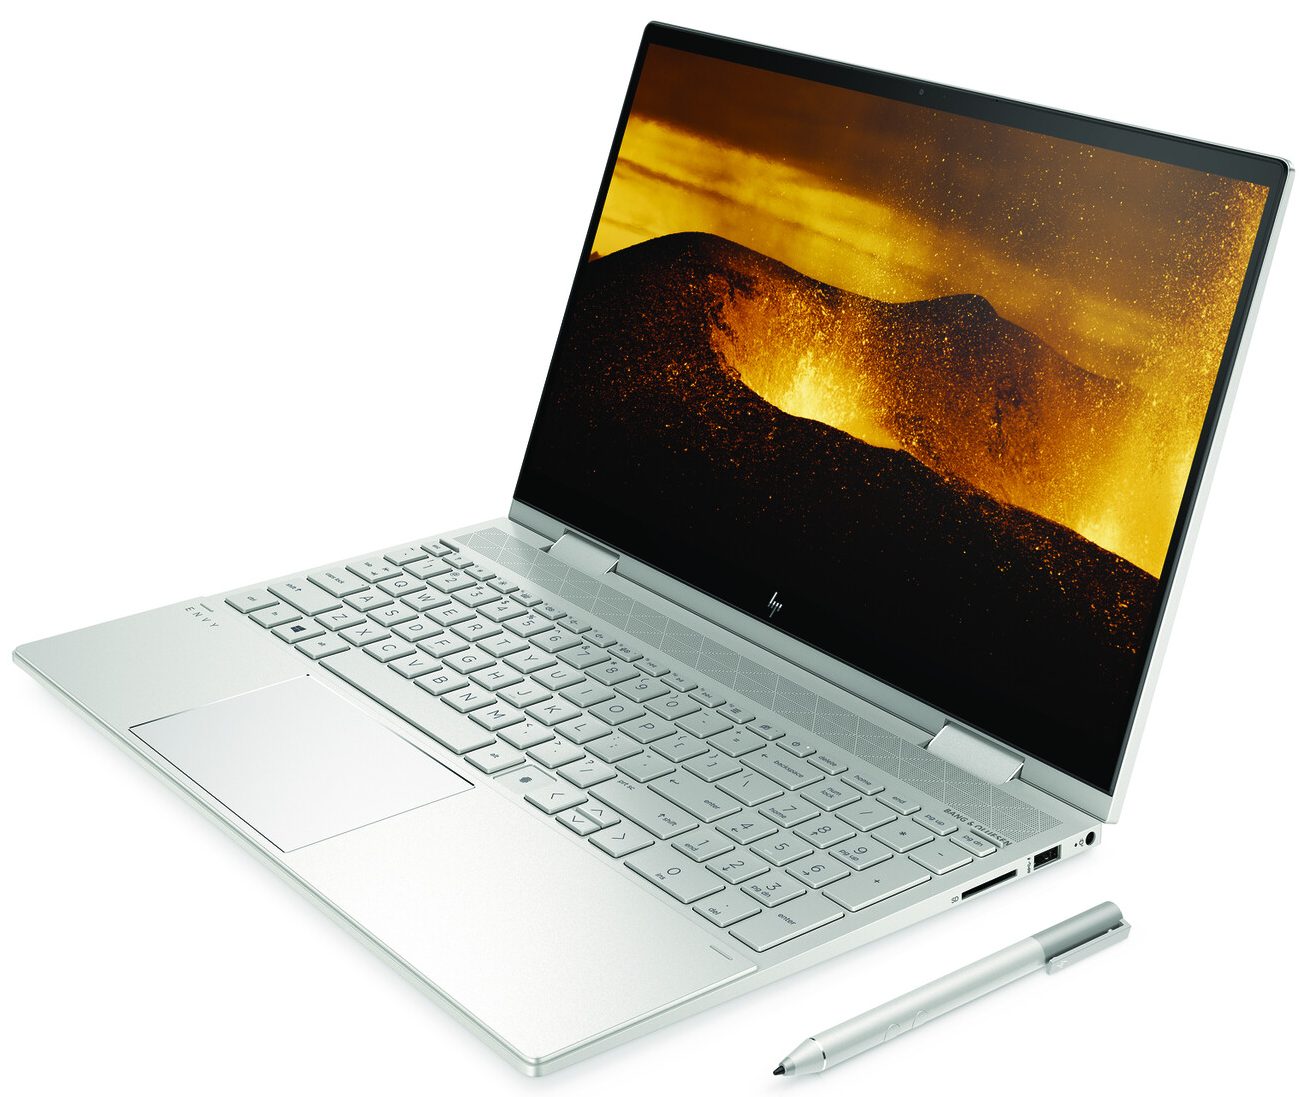 HP Envy x360 15 15-ed0000 15-ed0999 Notebook - HP Envy x360 15 15-ed0000 15-ed0999  Notebook Uyumlu Ürünler / Bilendenal.com Doğru ürünü bilendenal